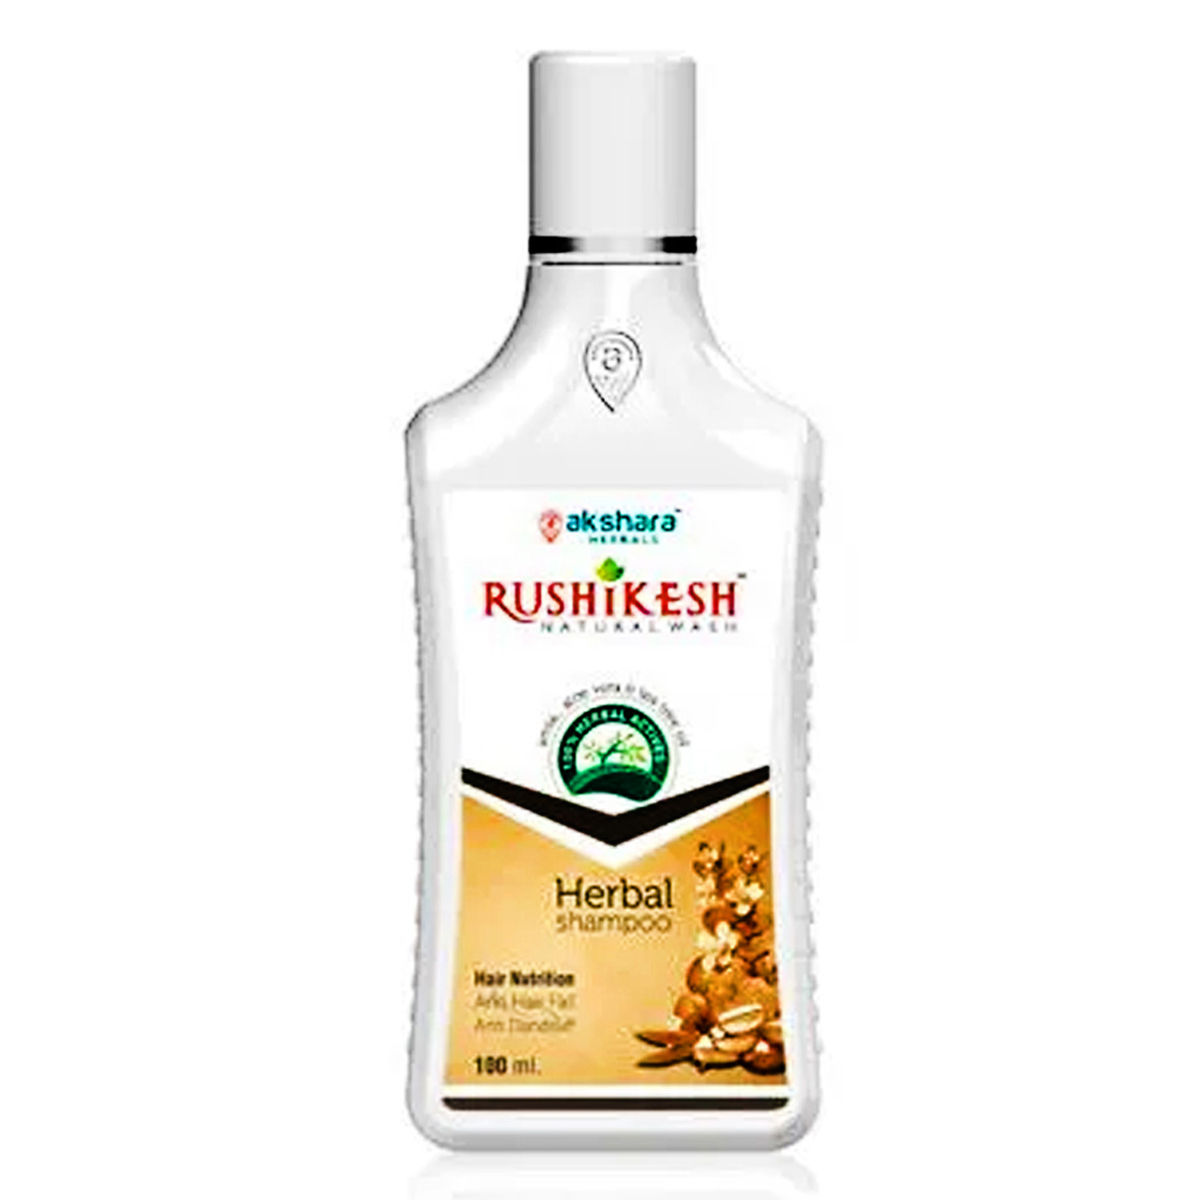 Buy Rushikesh Natural Wash Herbal Shampoo, 100 ml Online